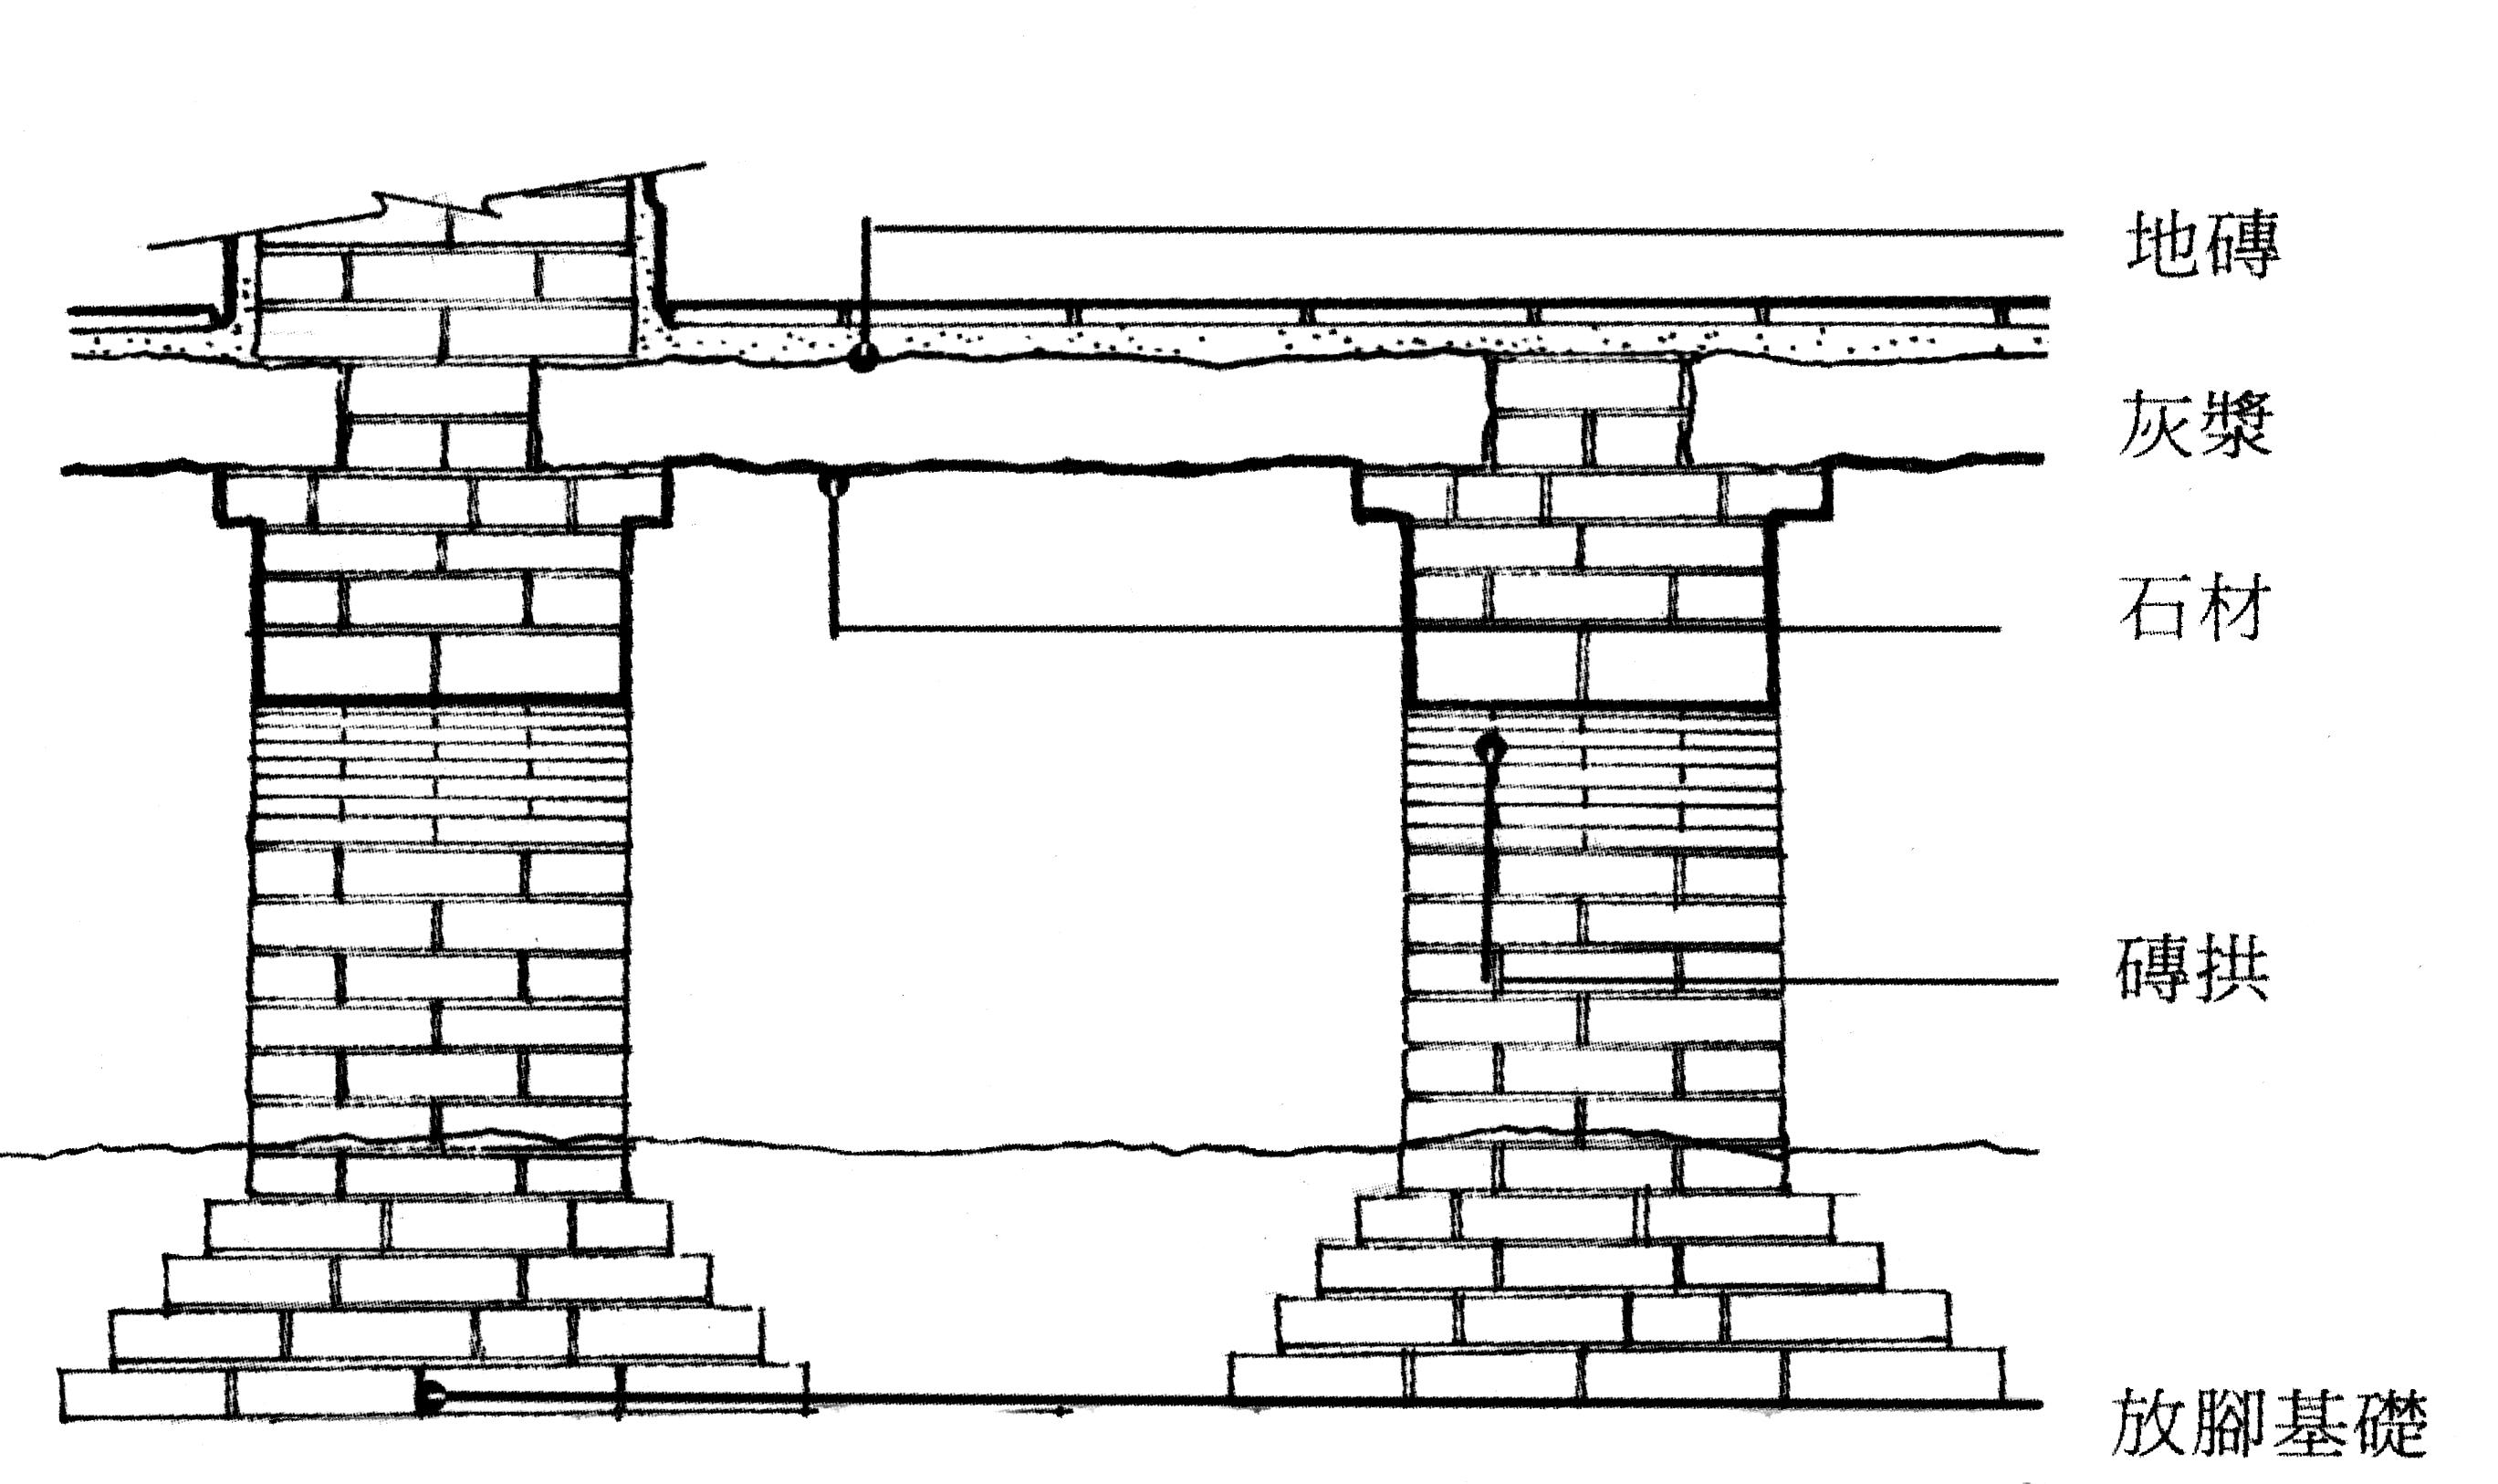 紅毛城圖片檔:英領事住宅一樓樓板基礎構造示意圖